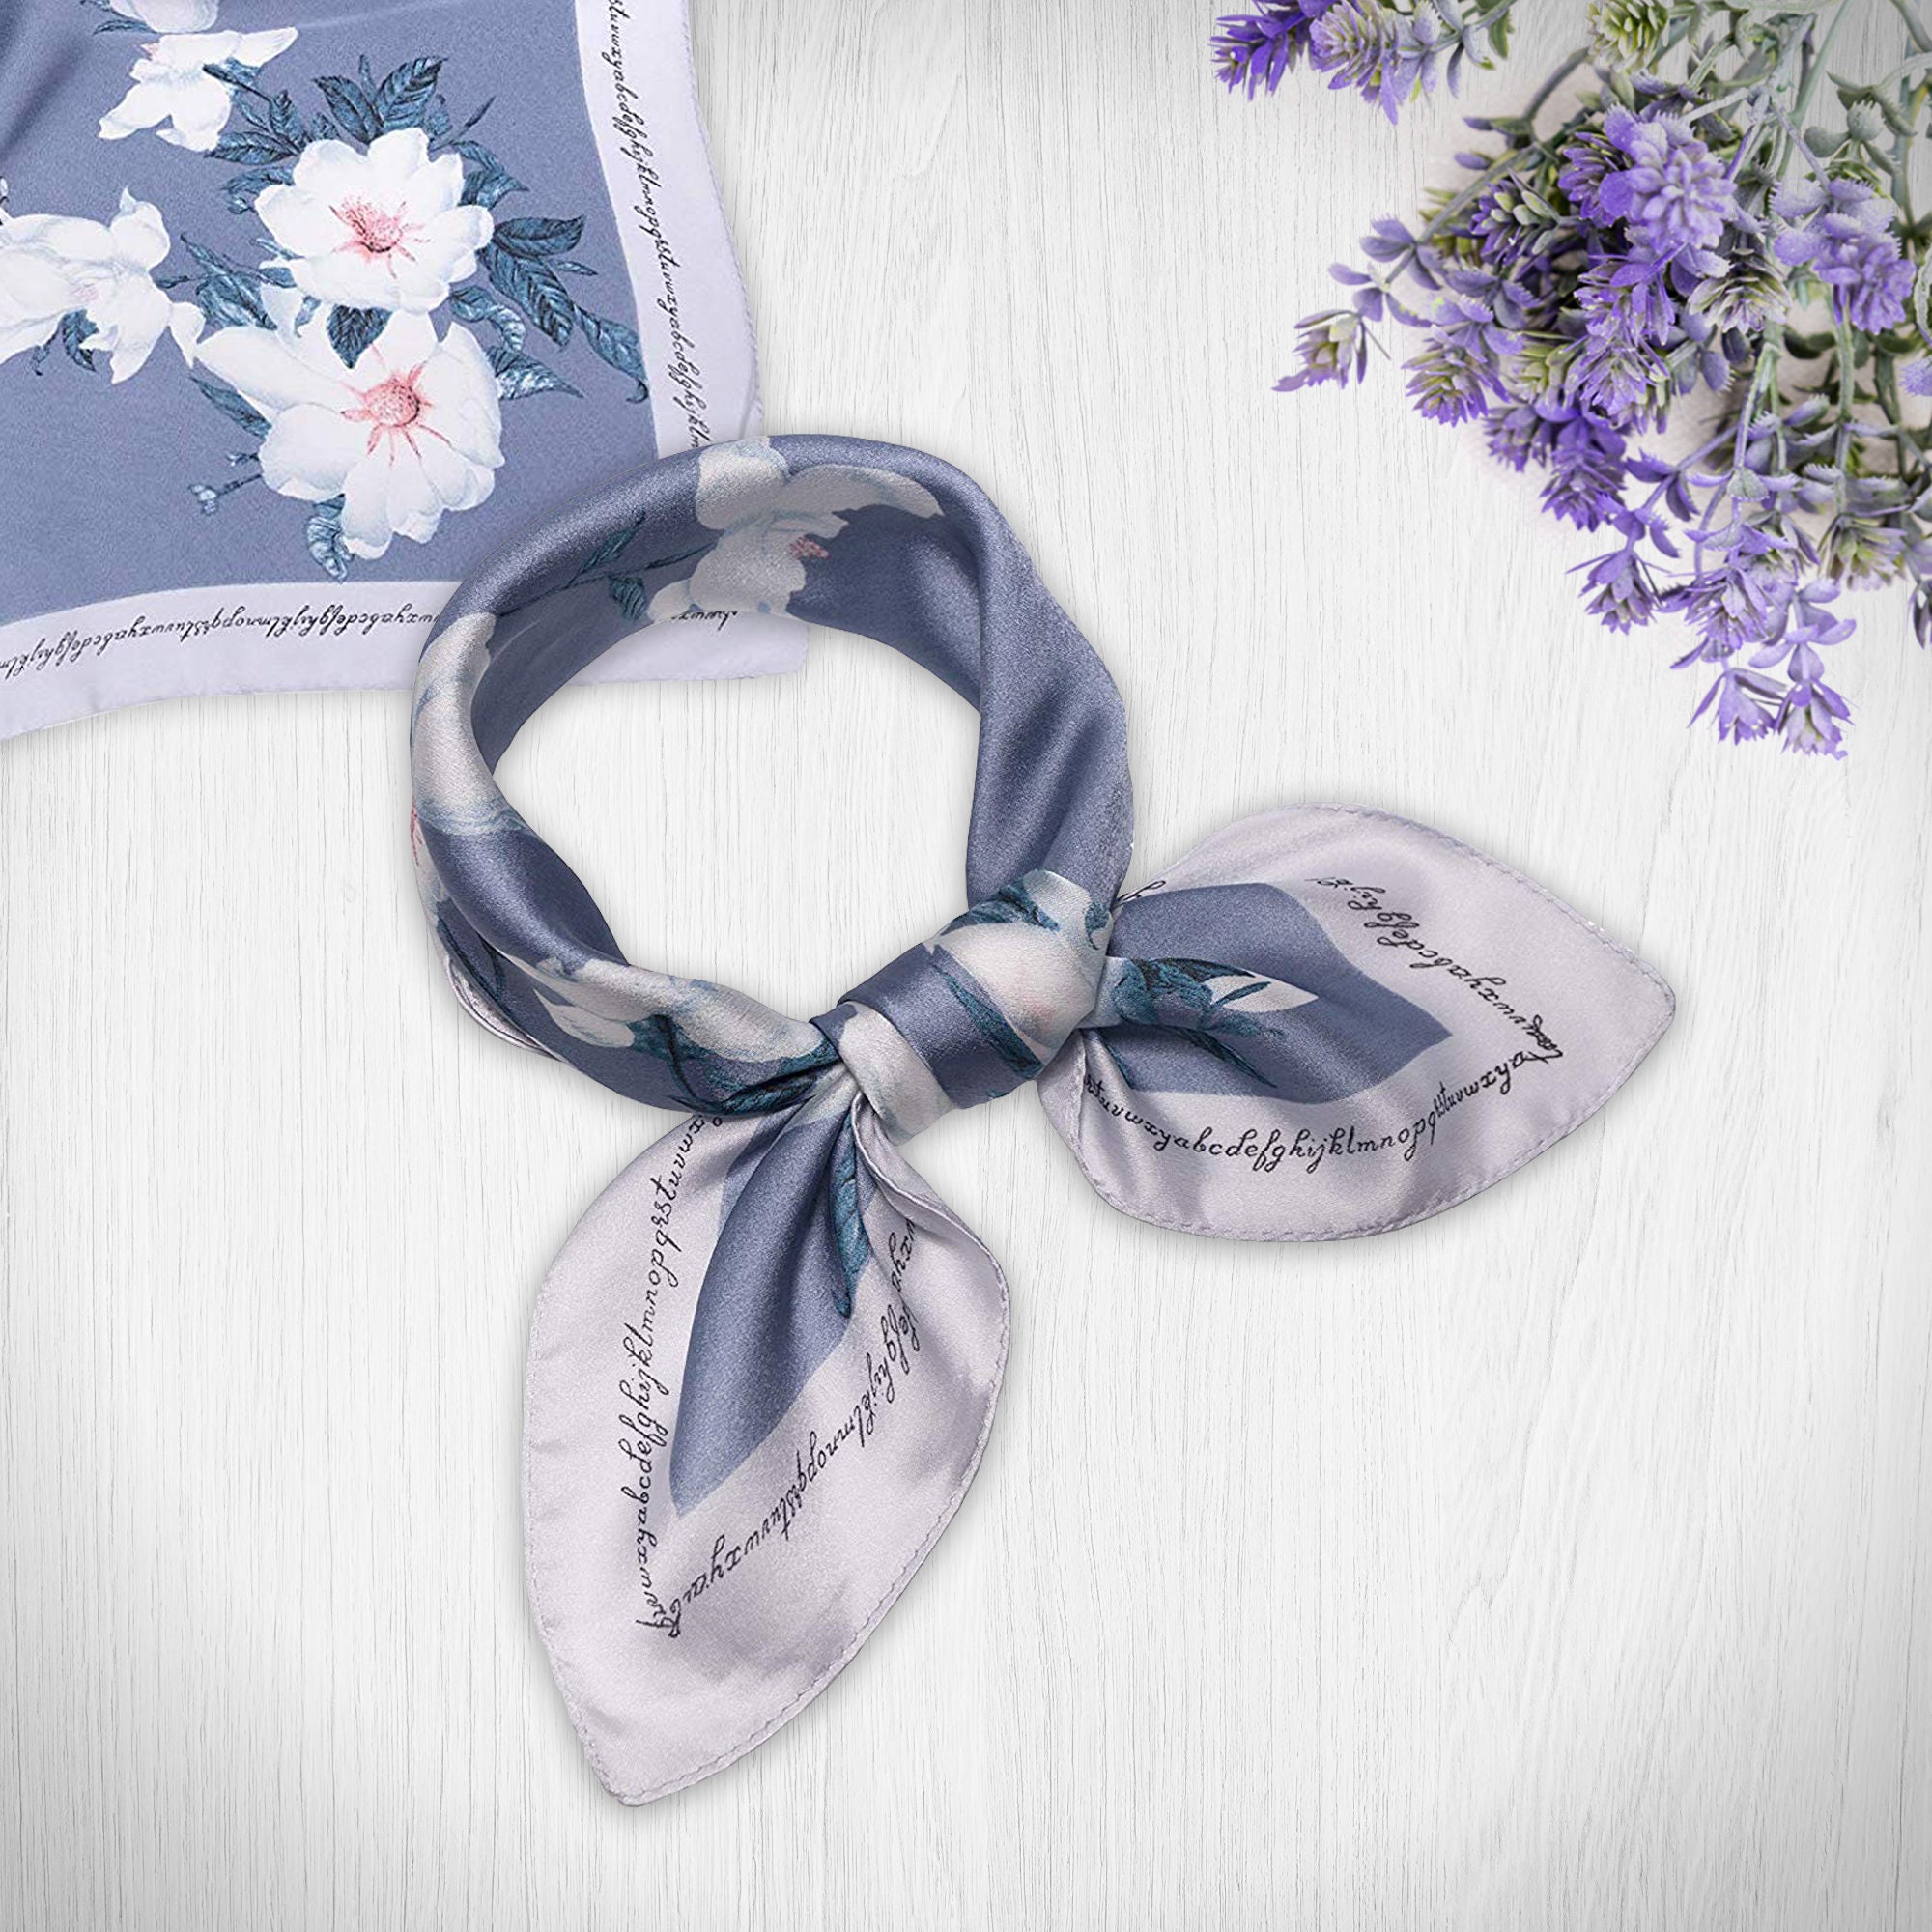 Tea Silk Scarfs for Women Floral Print Satin Scarf for Headscarf Hair –  HanSi scarf